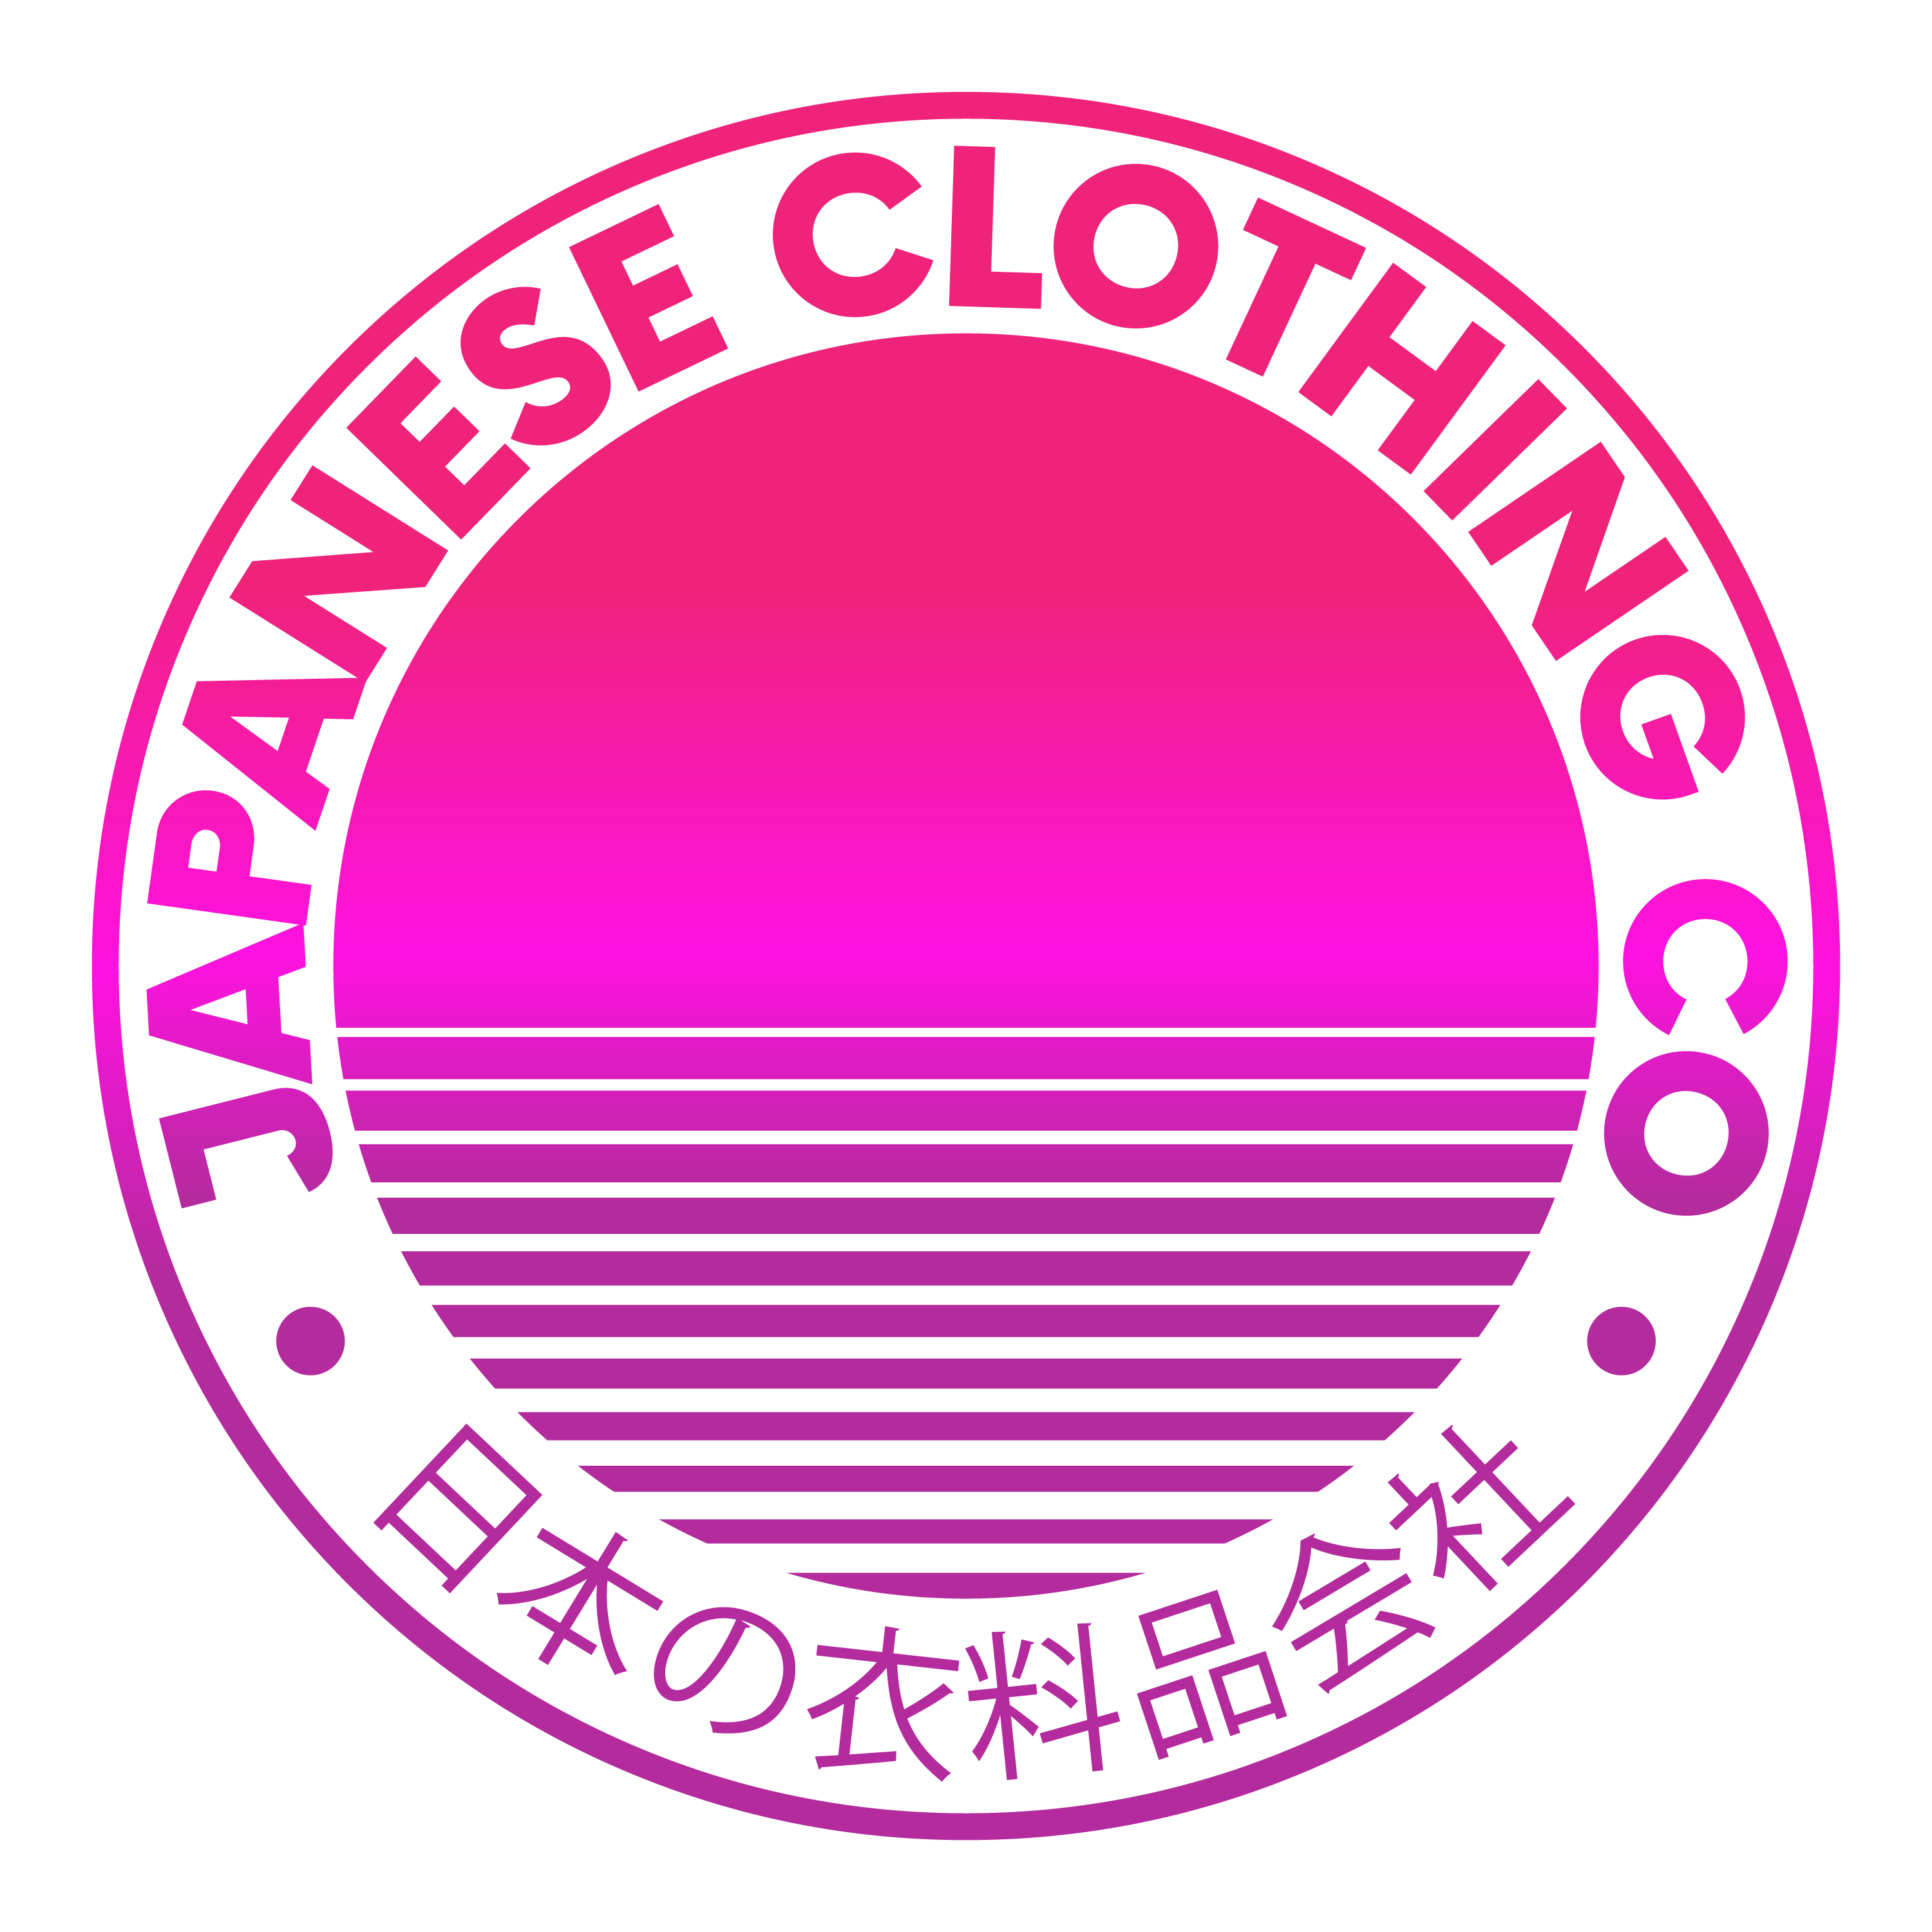 Japanese Clothing Co